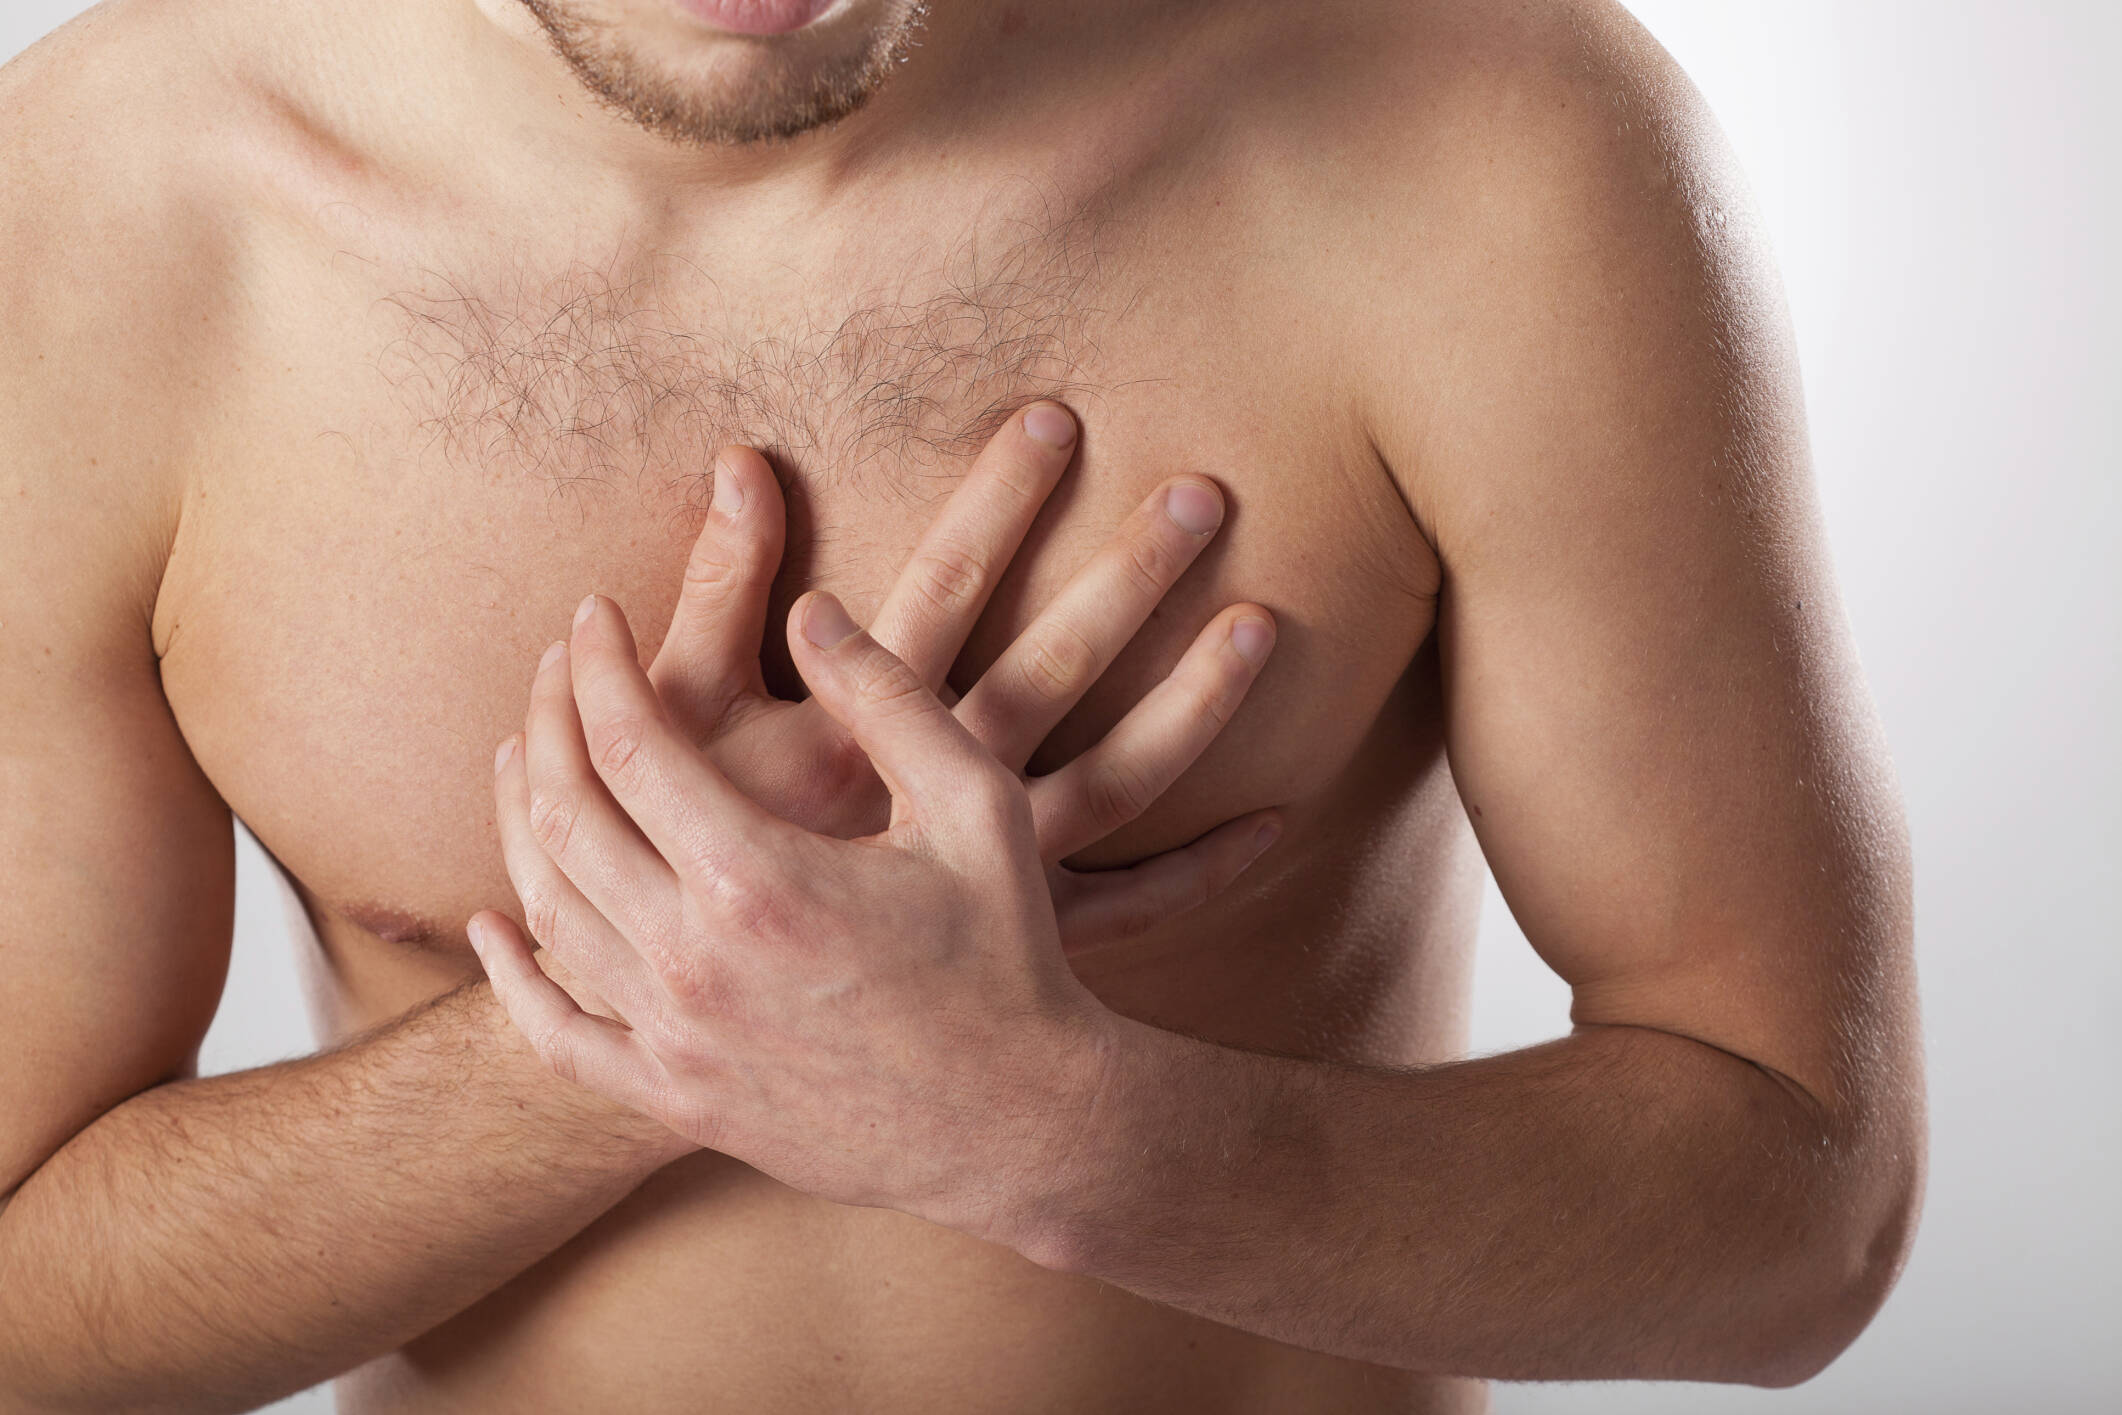 Dor no peito: sIntoma clássico, a dor também pode irradiar-se para o lado esquerdo do corpo e ombro, além das mandíbulas. É uma dor de pressão no peito. Foto: Thinkstock/Getty Images